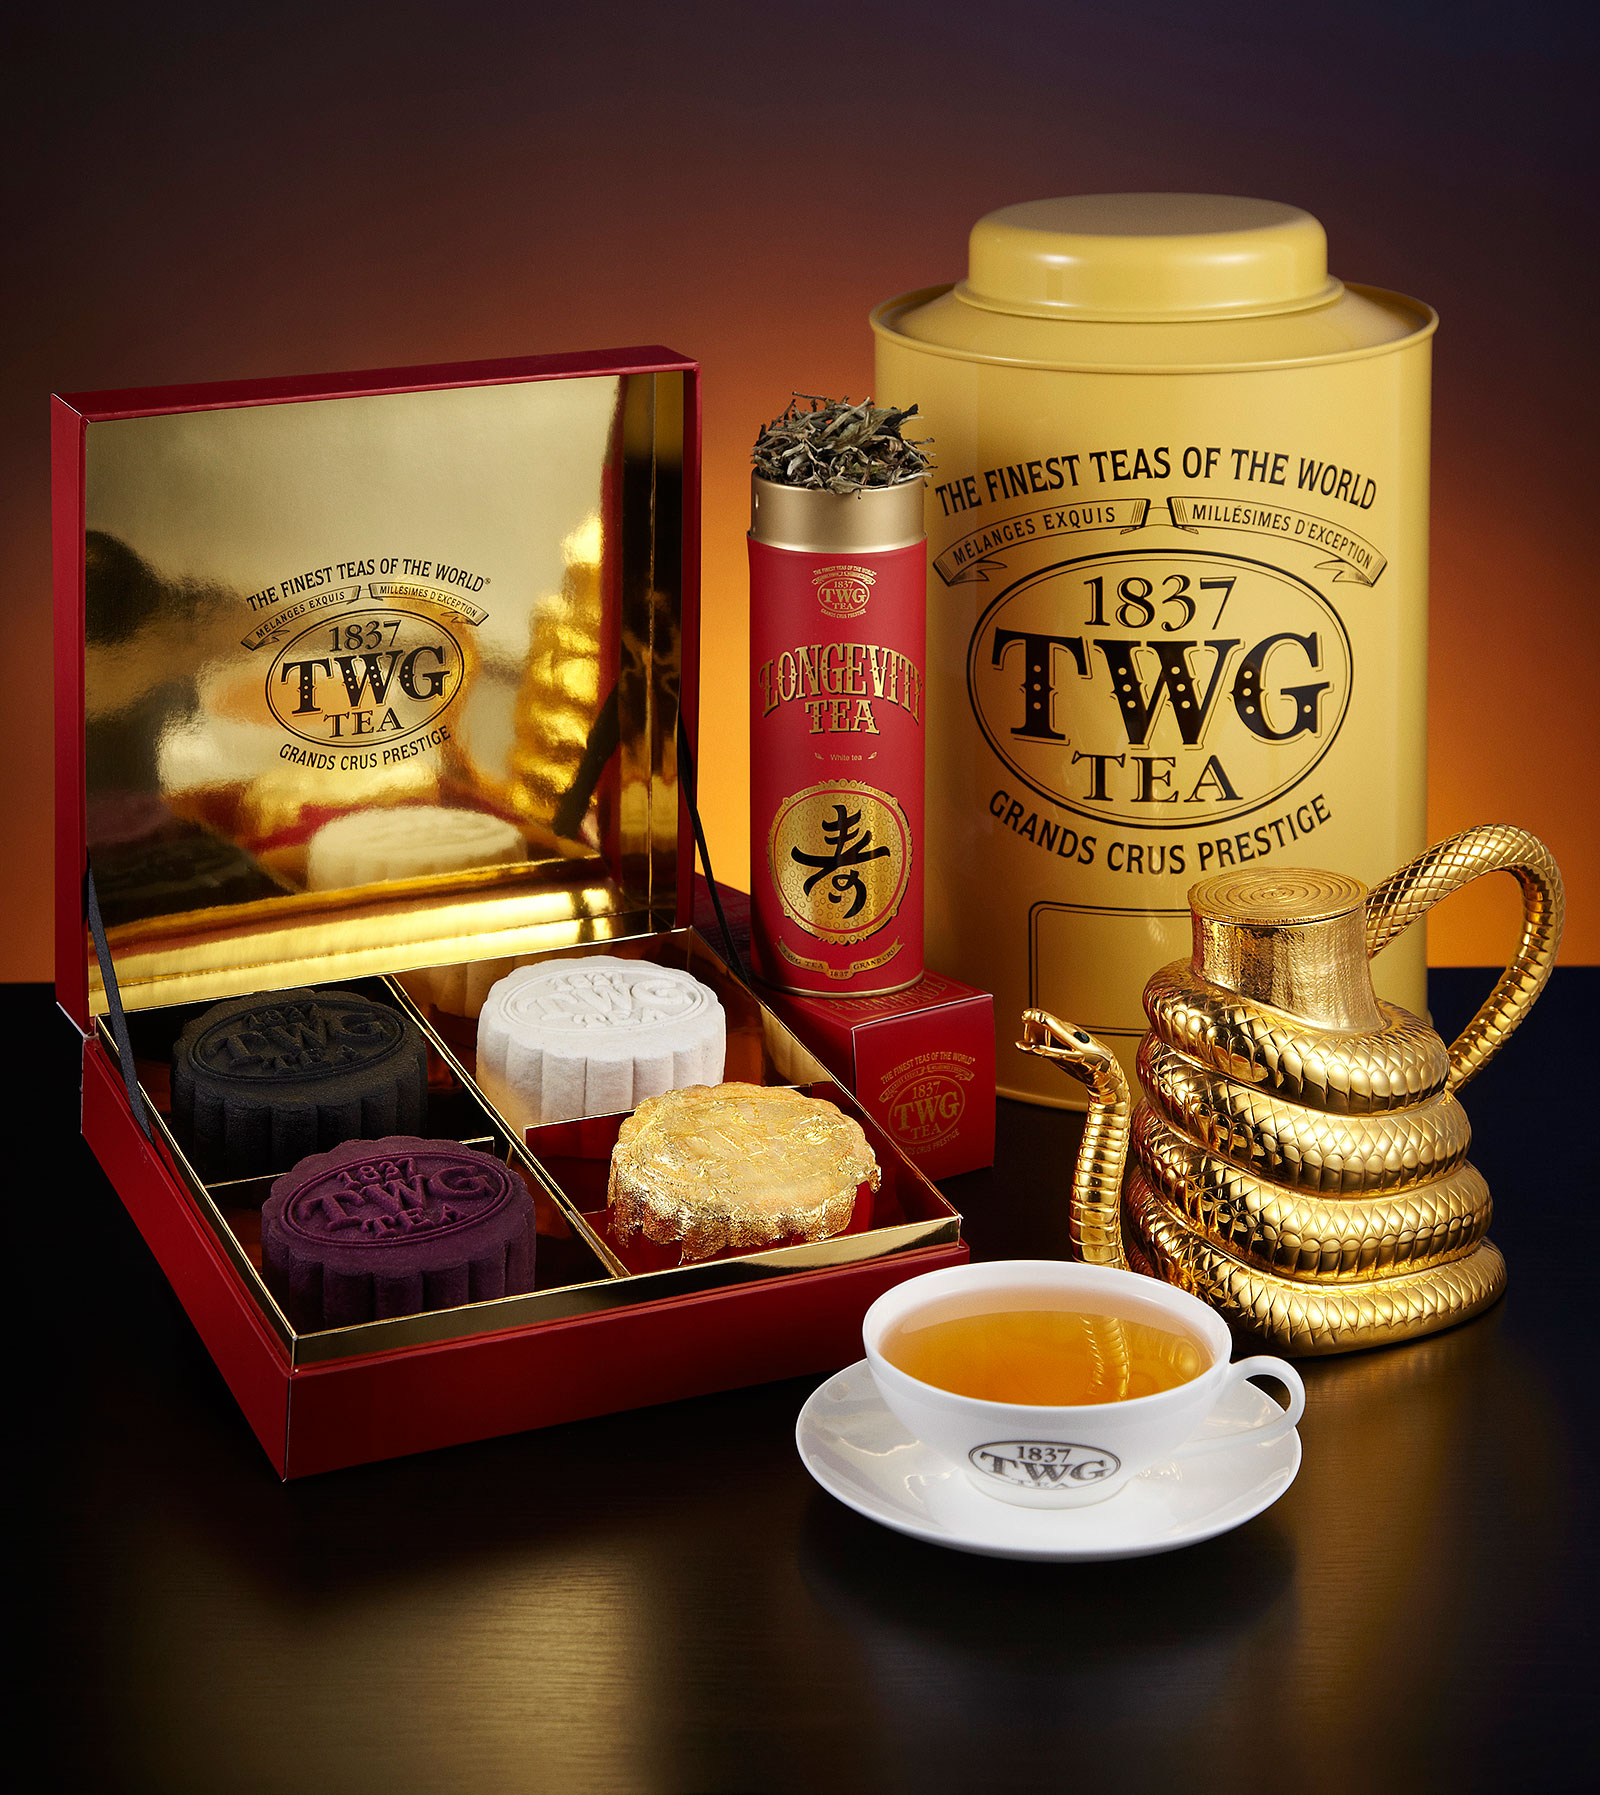 TWG Tea mooncakes